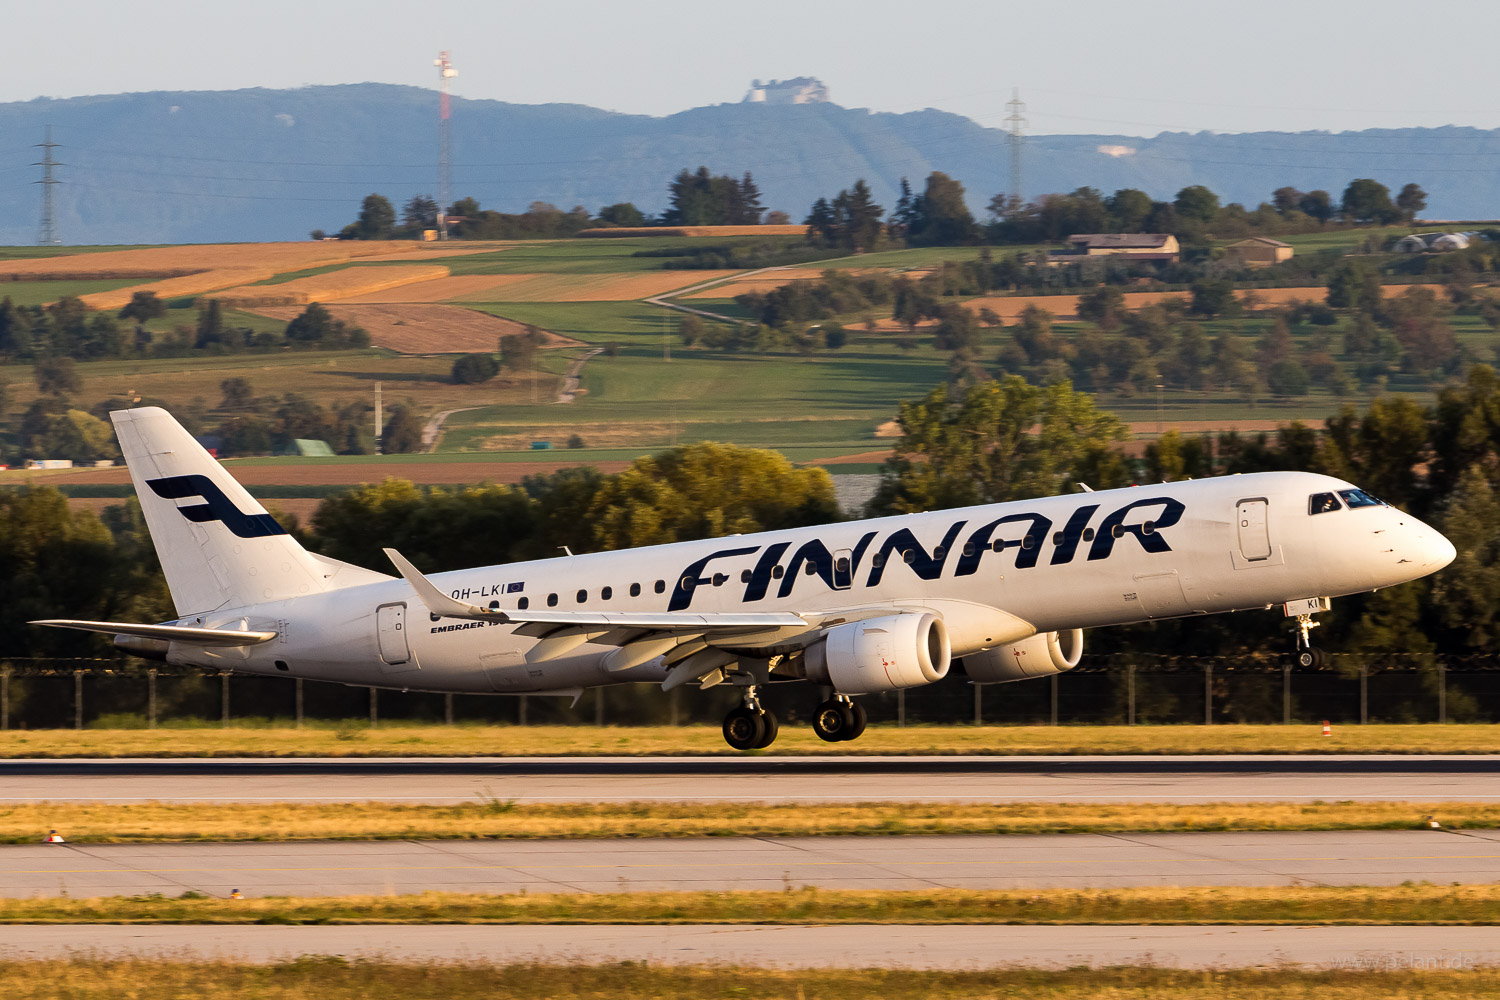 OH-LKI Finnair Embraer 190 in Stuttgart / STR